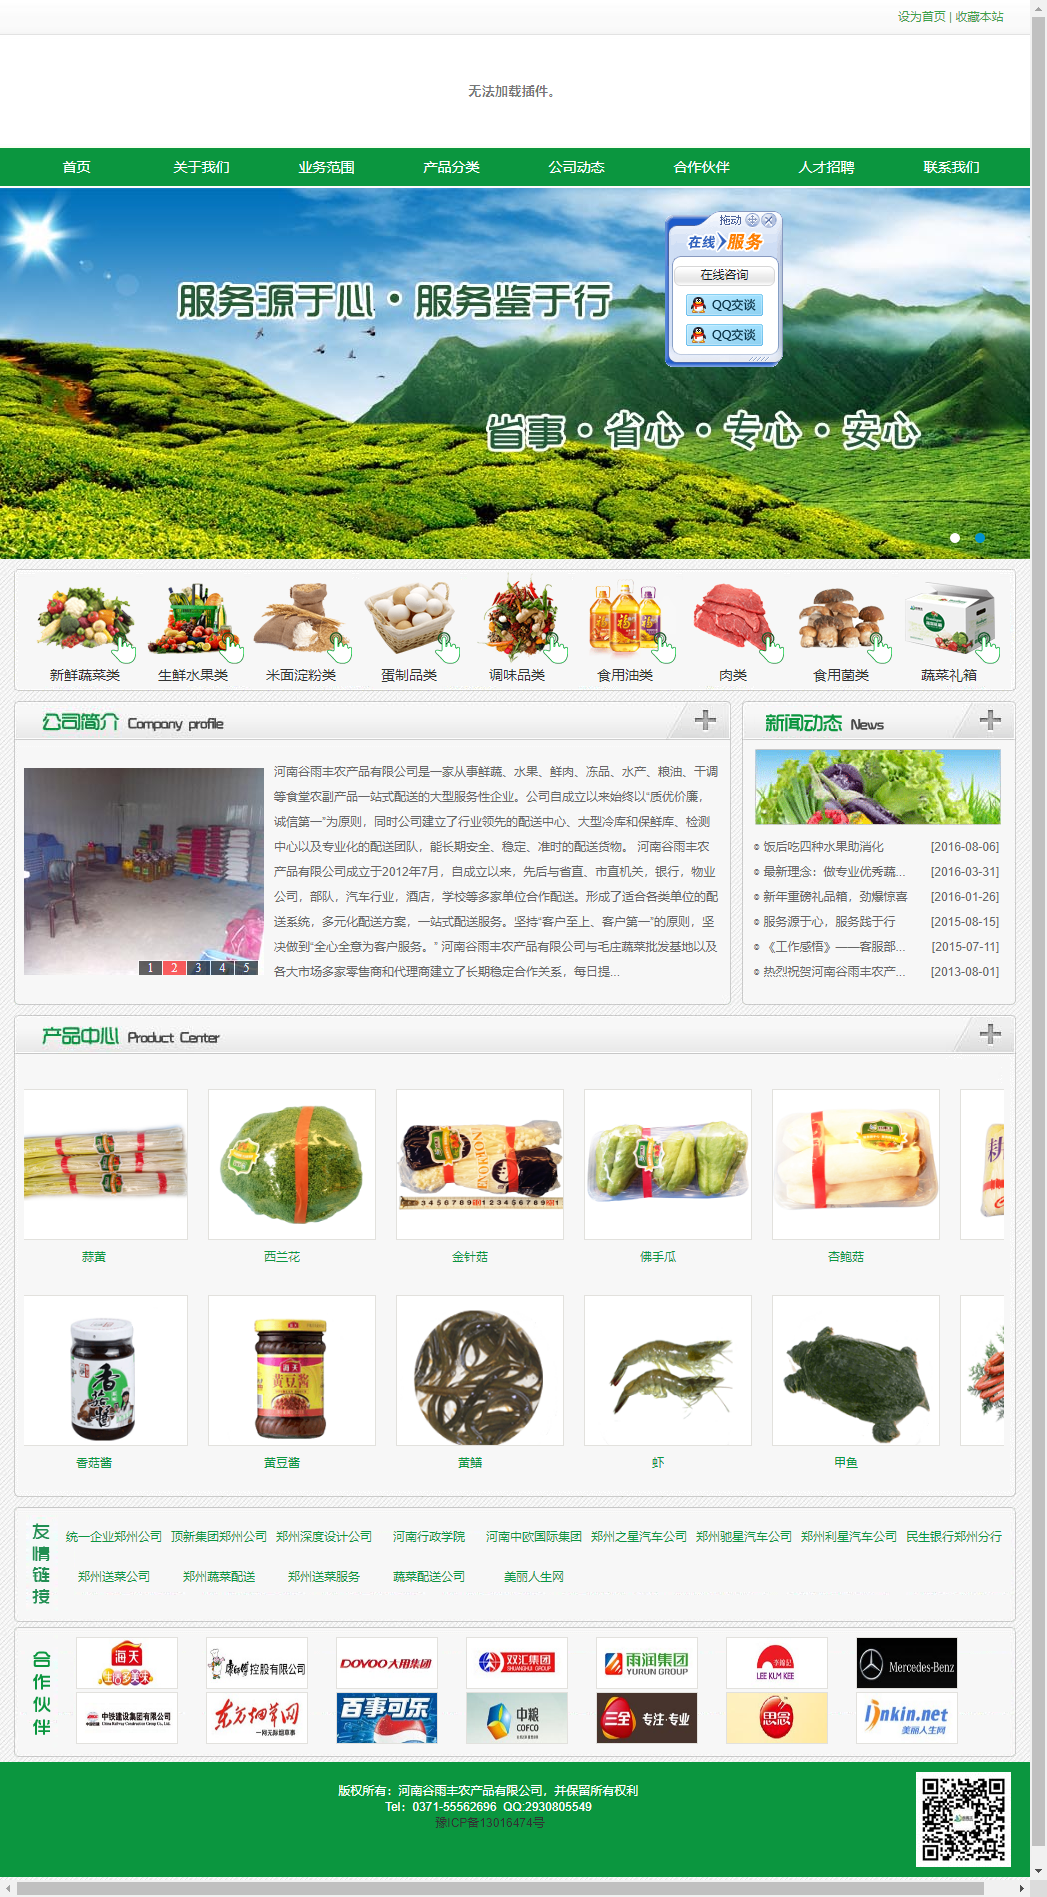 河南谷雨丰农产品有限公司网站案例